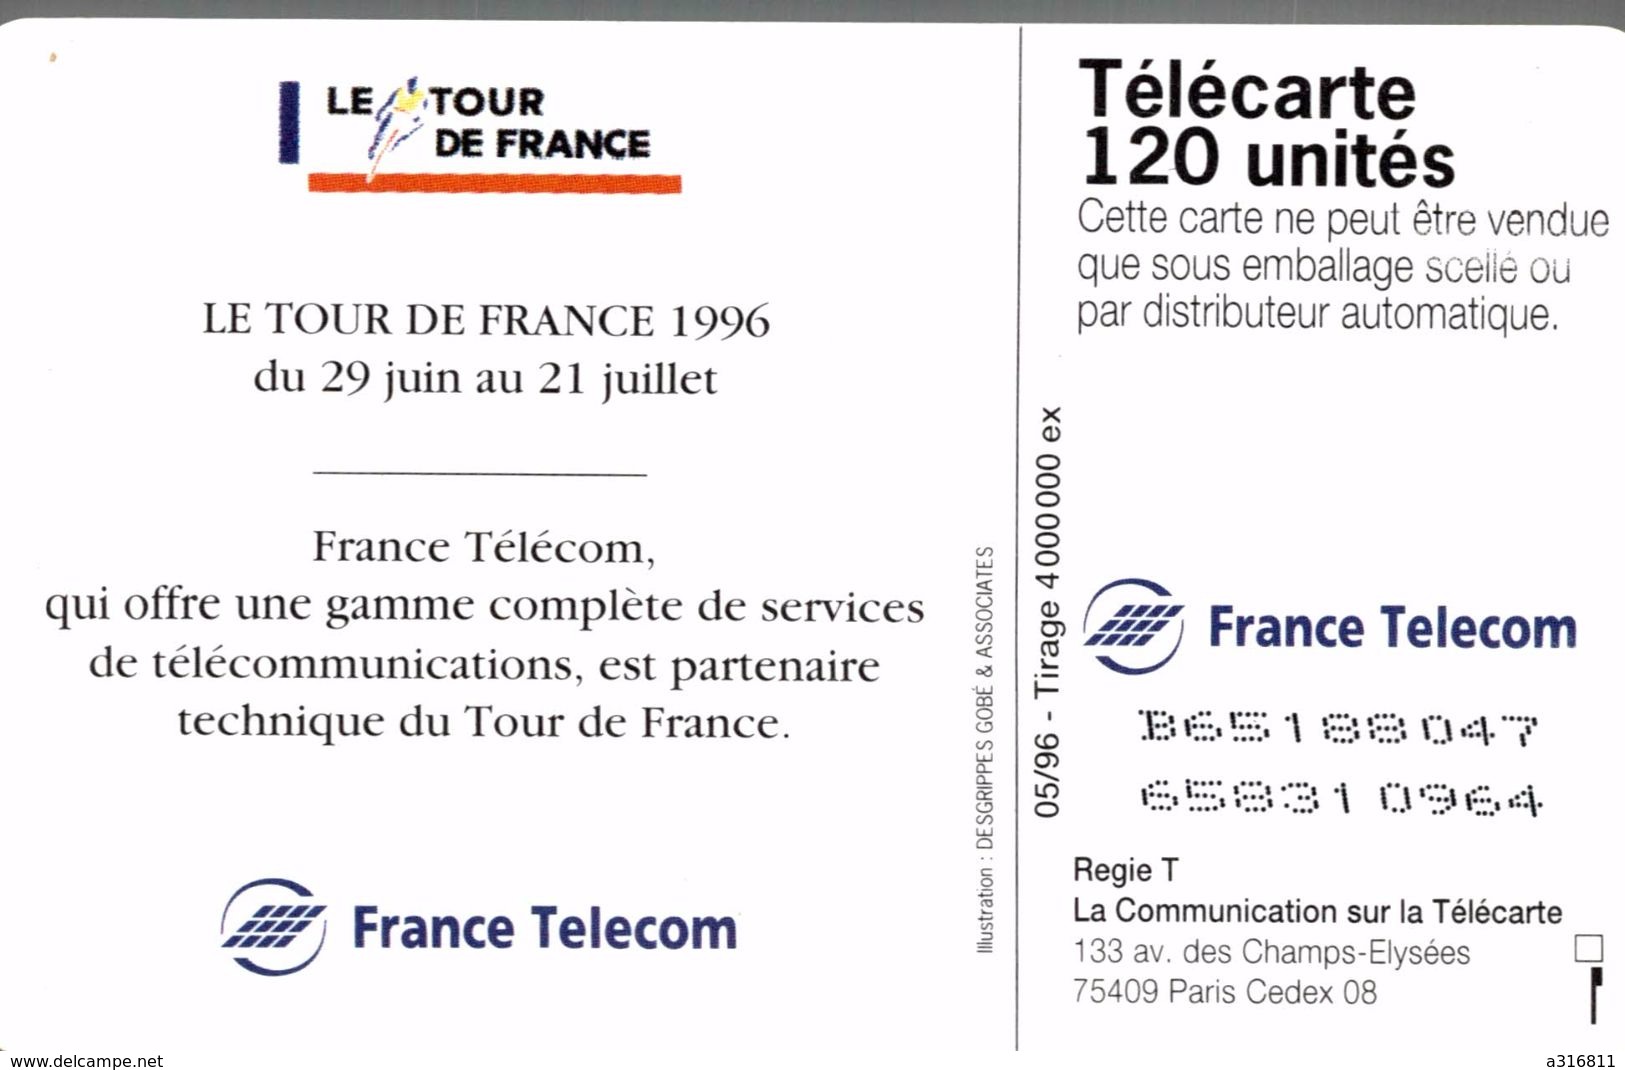 LE TOUR DE FRANCE 96 - 120 Unità